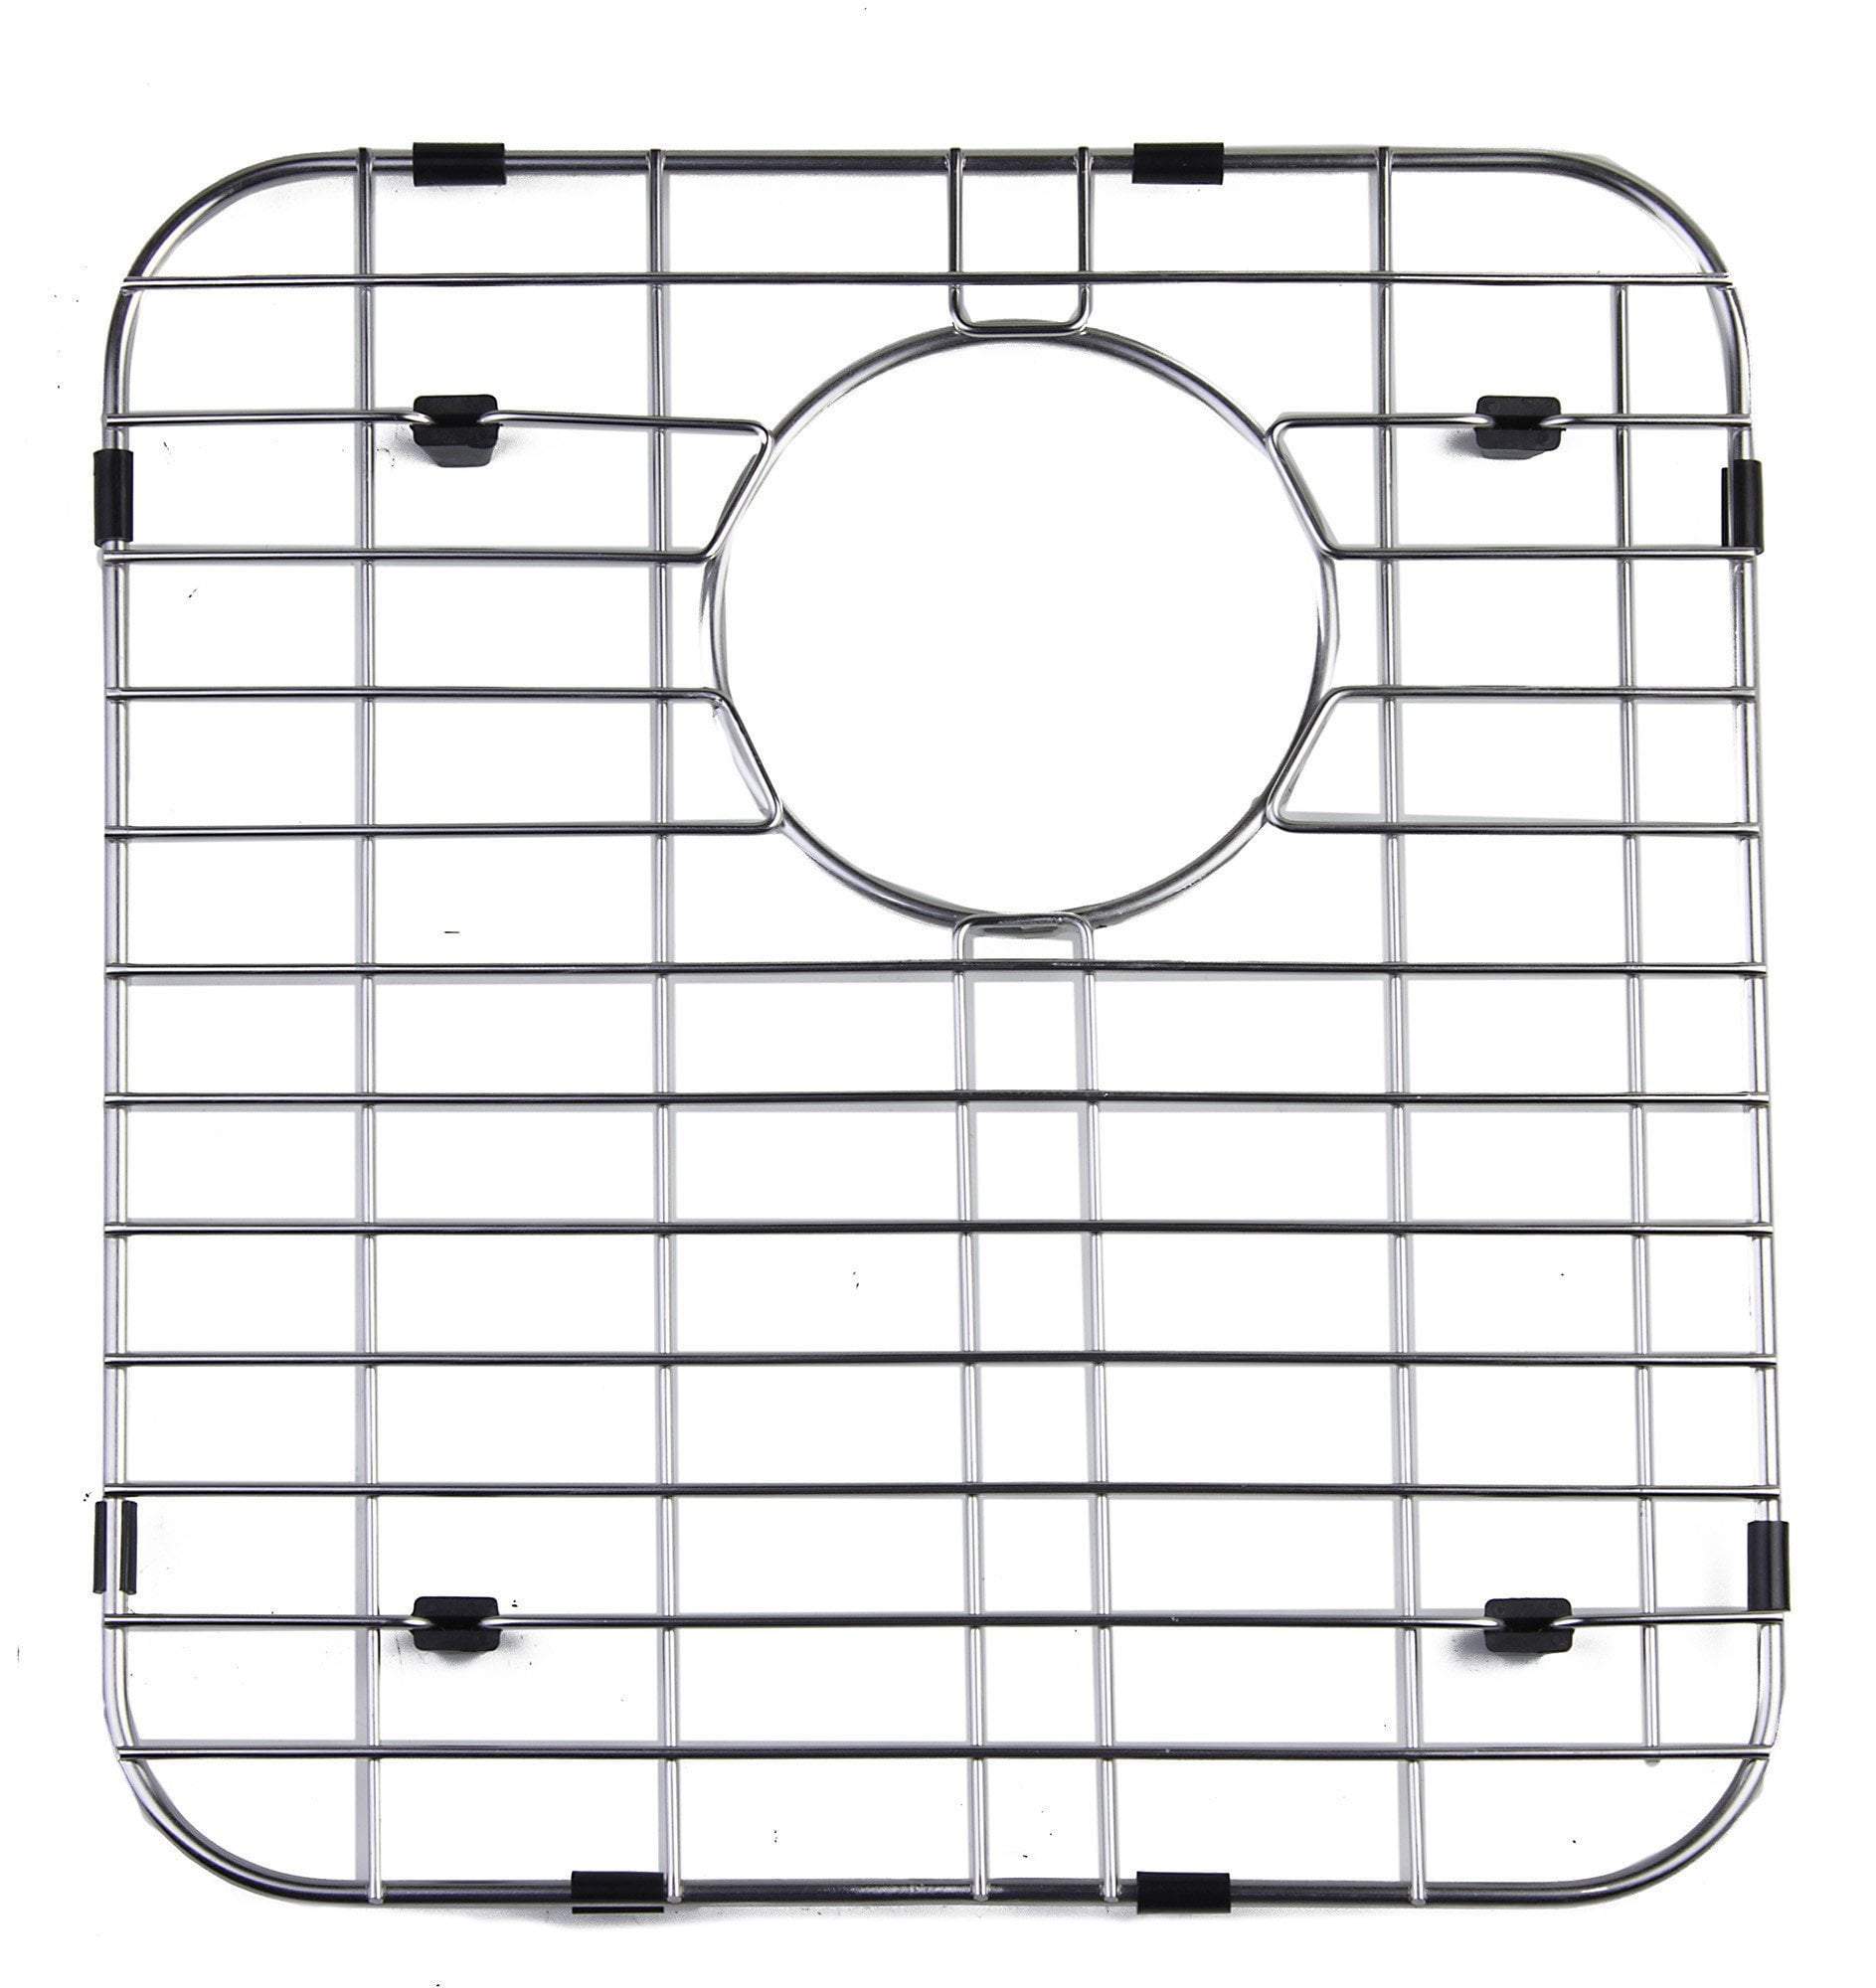 alfi left side solid stainless steel kitchen sink grid gr512l